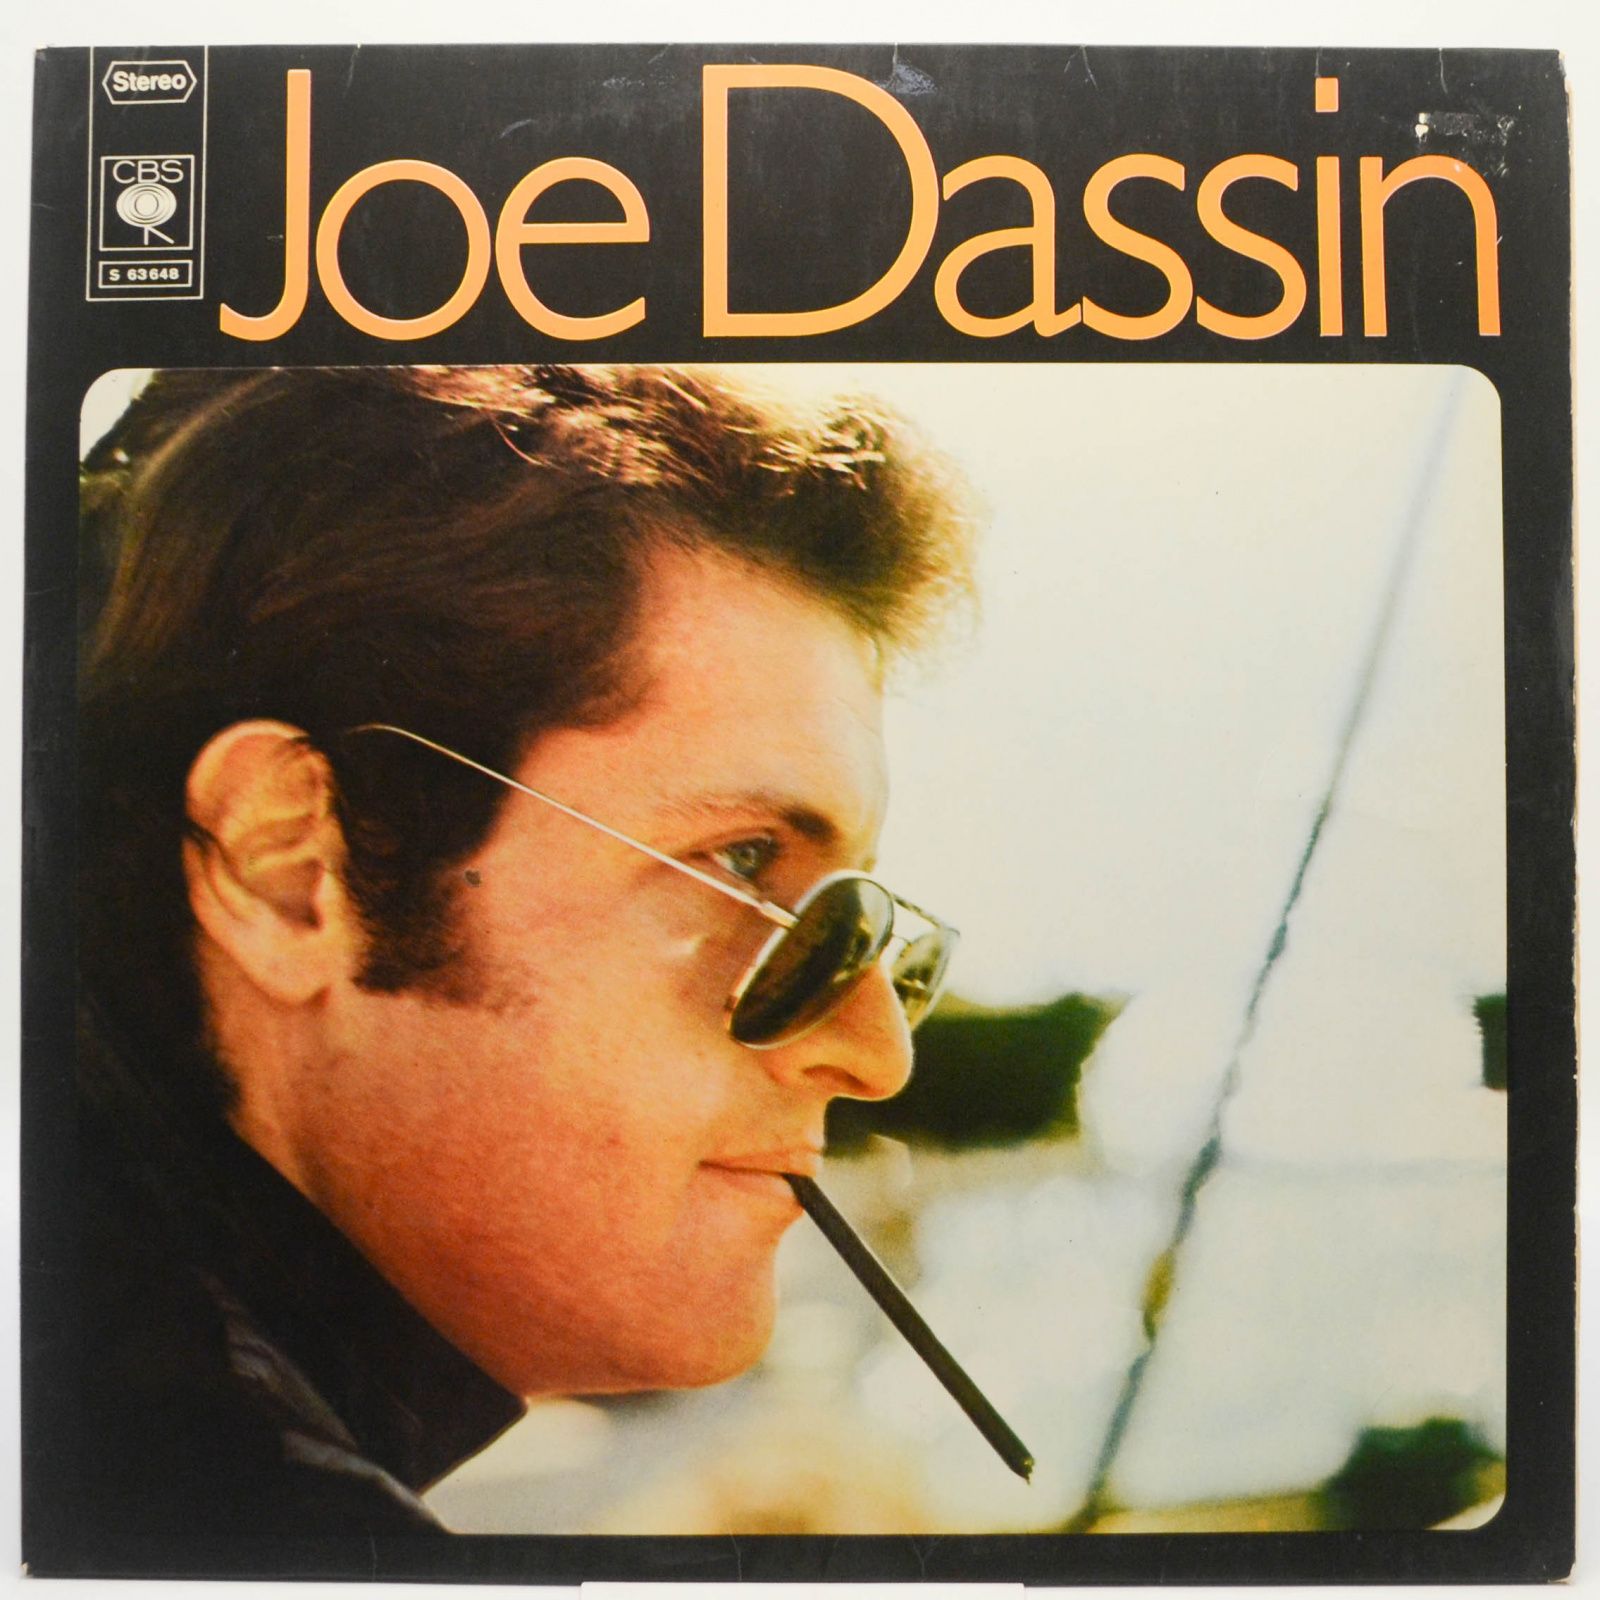 Joe Dassin — Joe Dassin, 1969